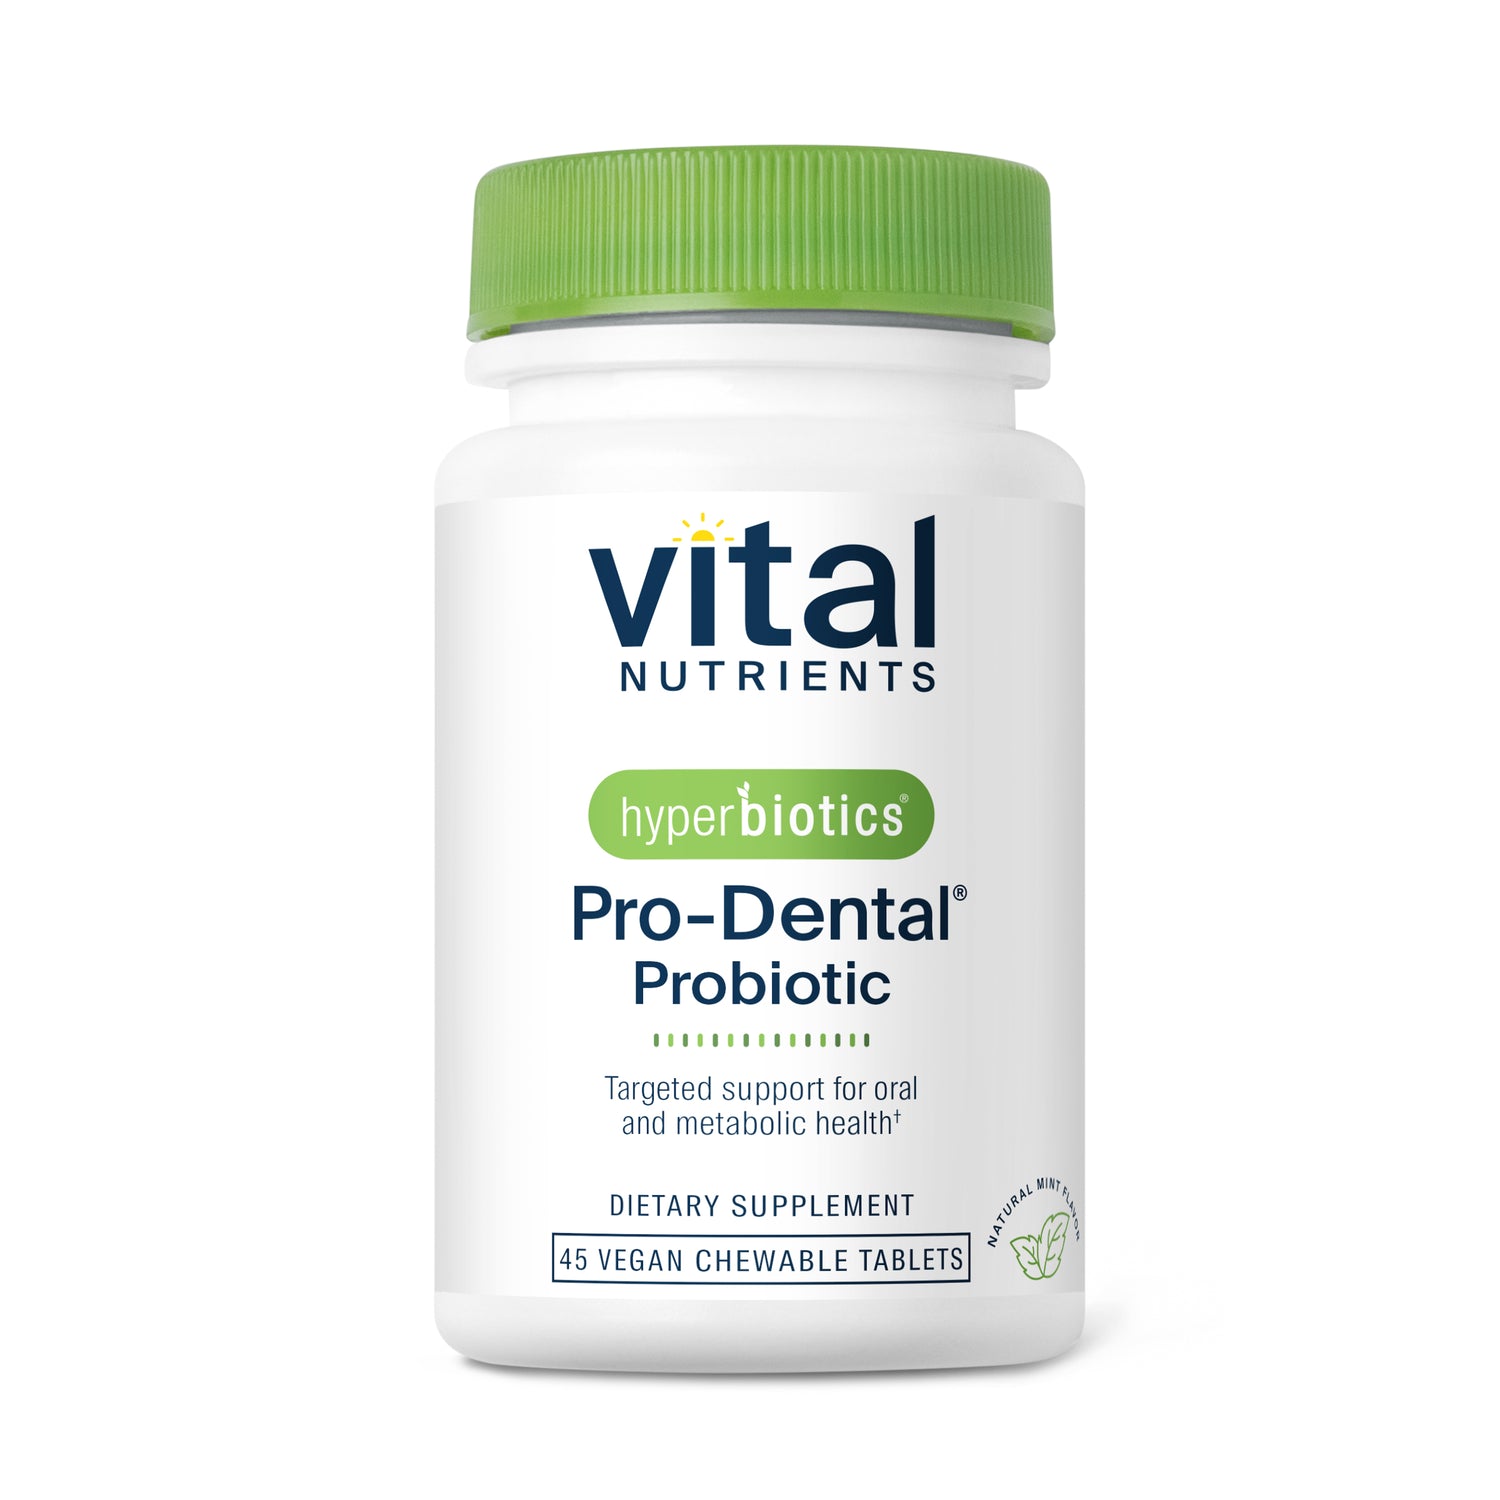 Hyperbiotics Pro-Dental Probiotic 45 chewable tablets.